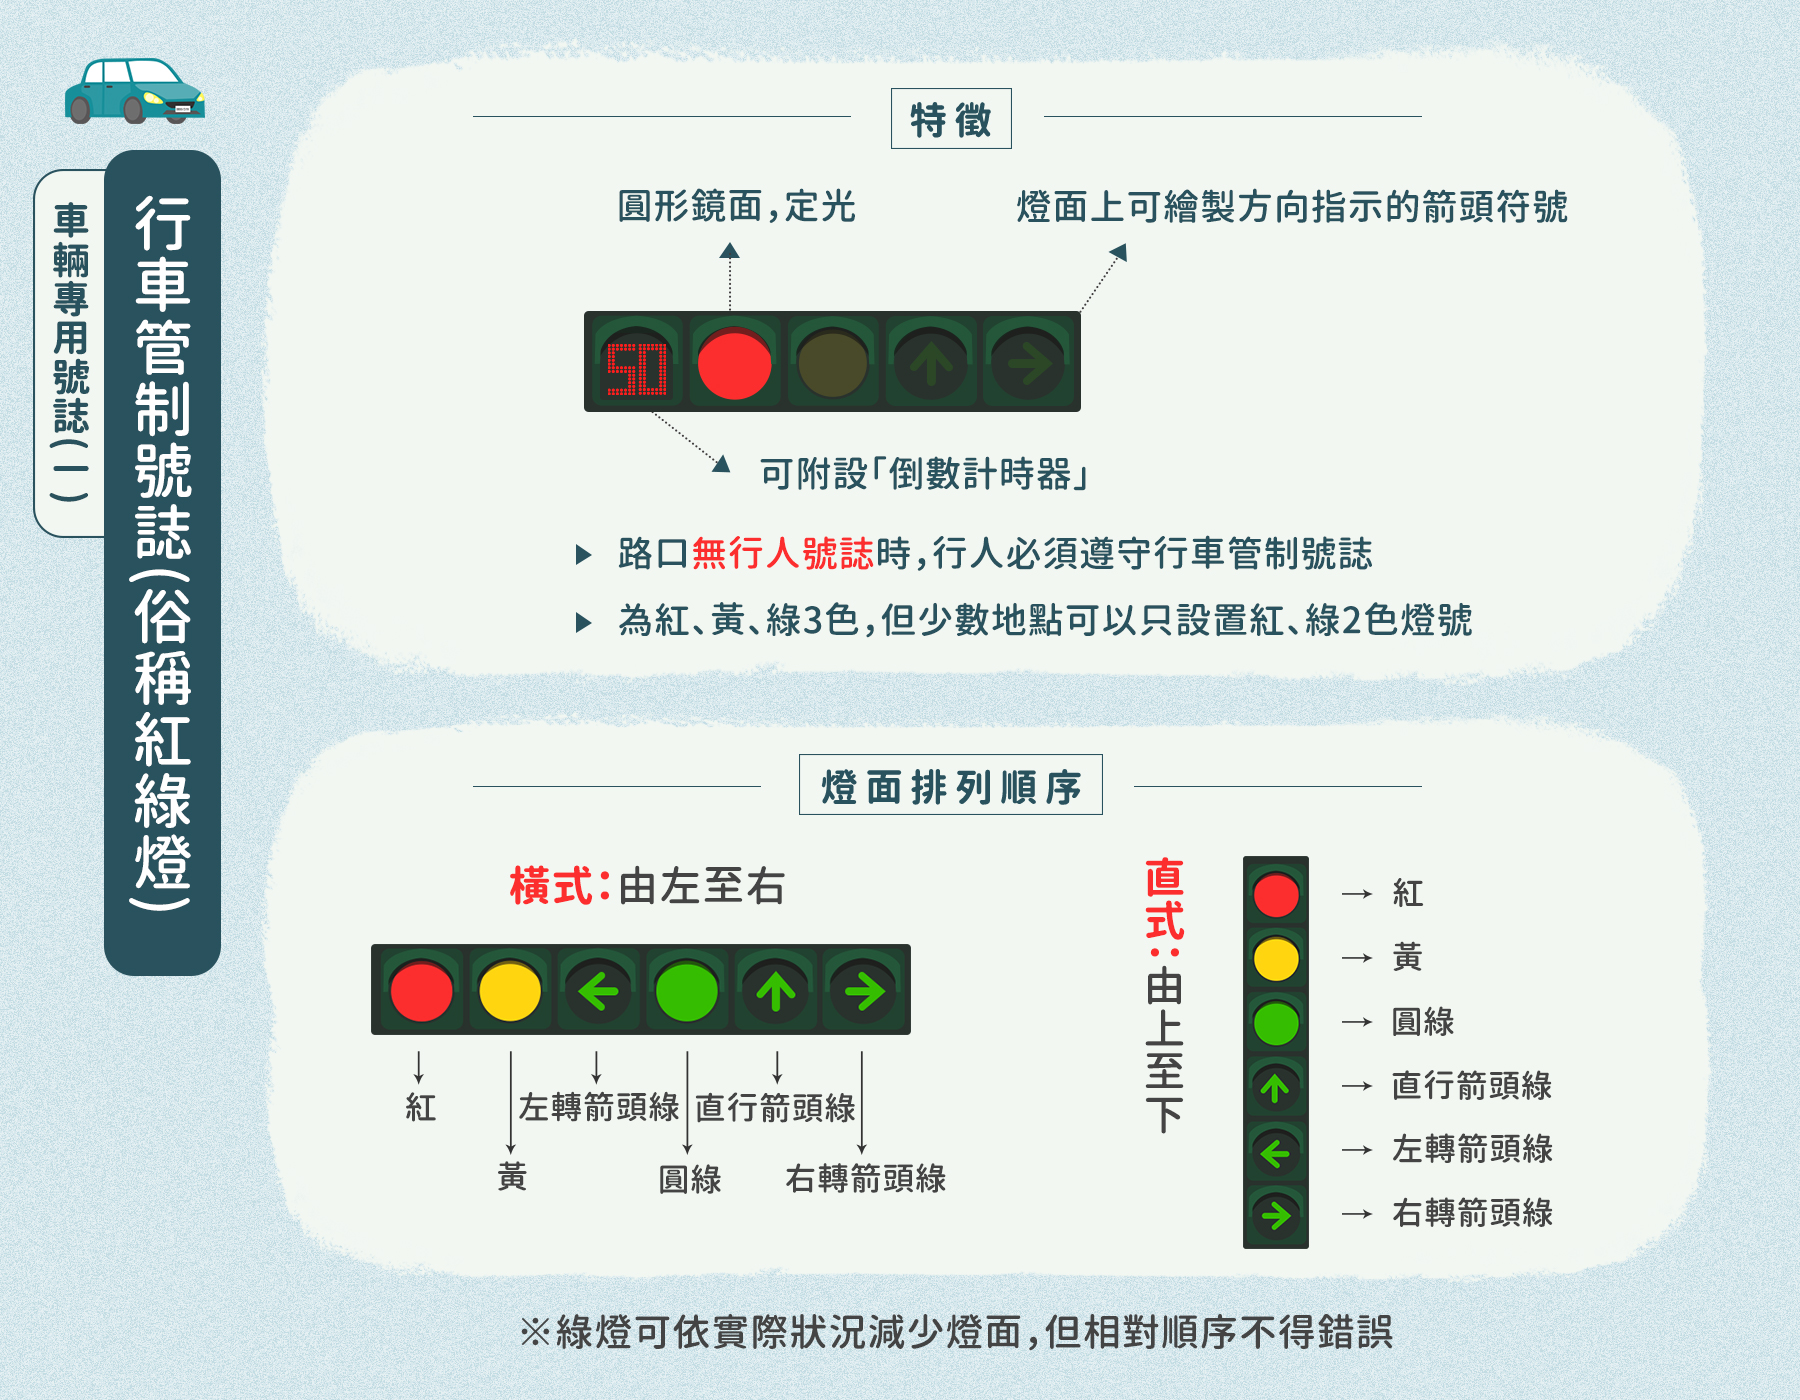 04_行車管制號誌(俗稱紅綠燈)的特徵、順序